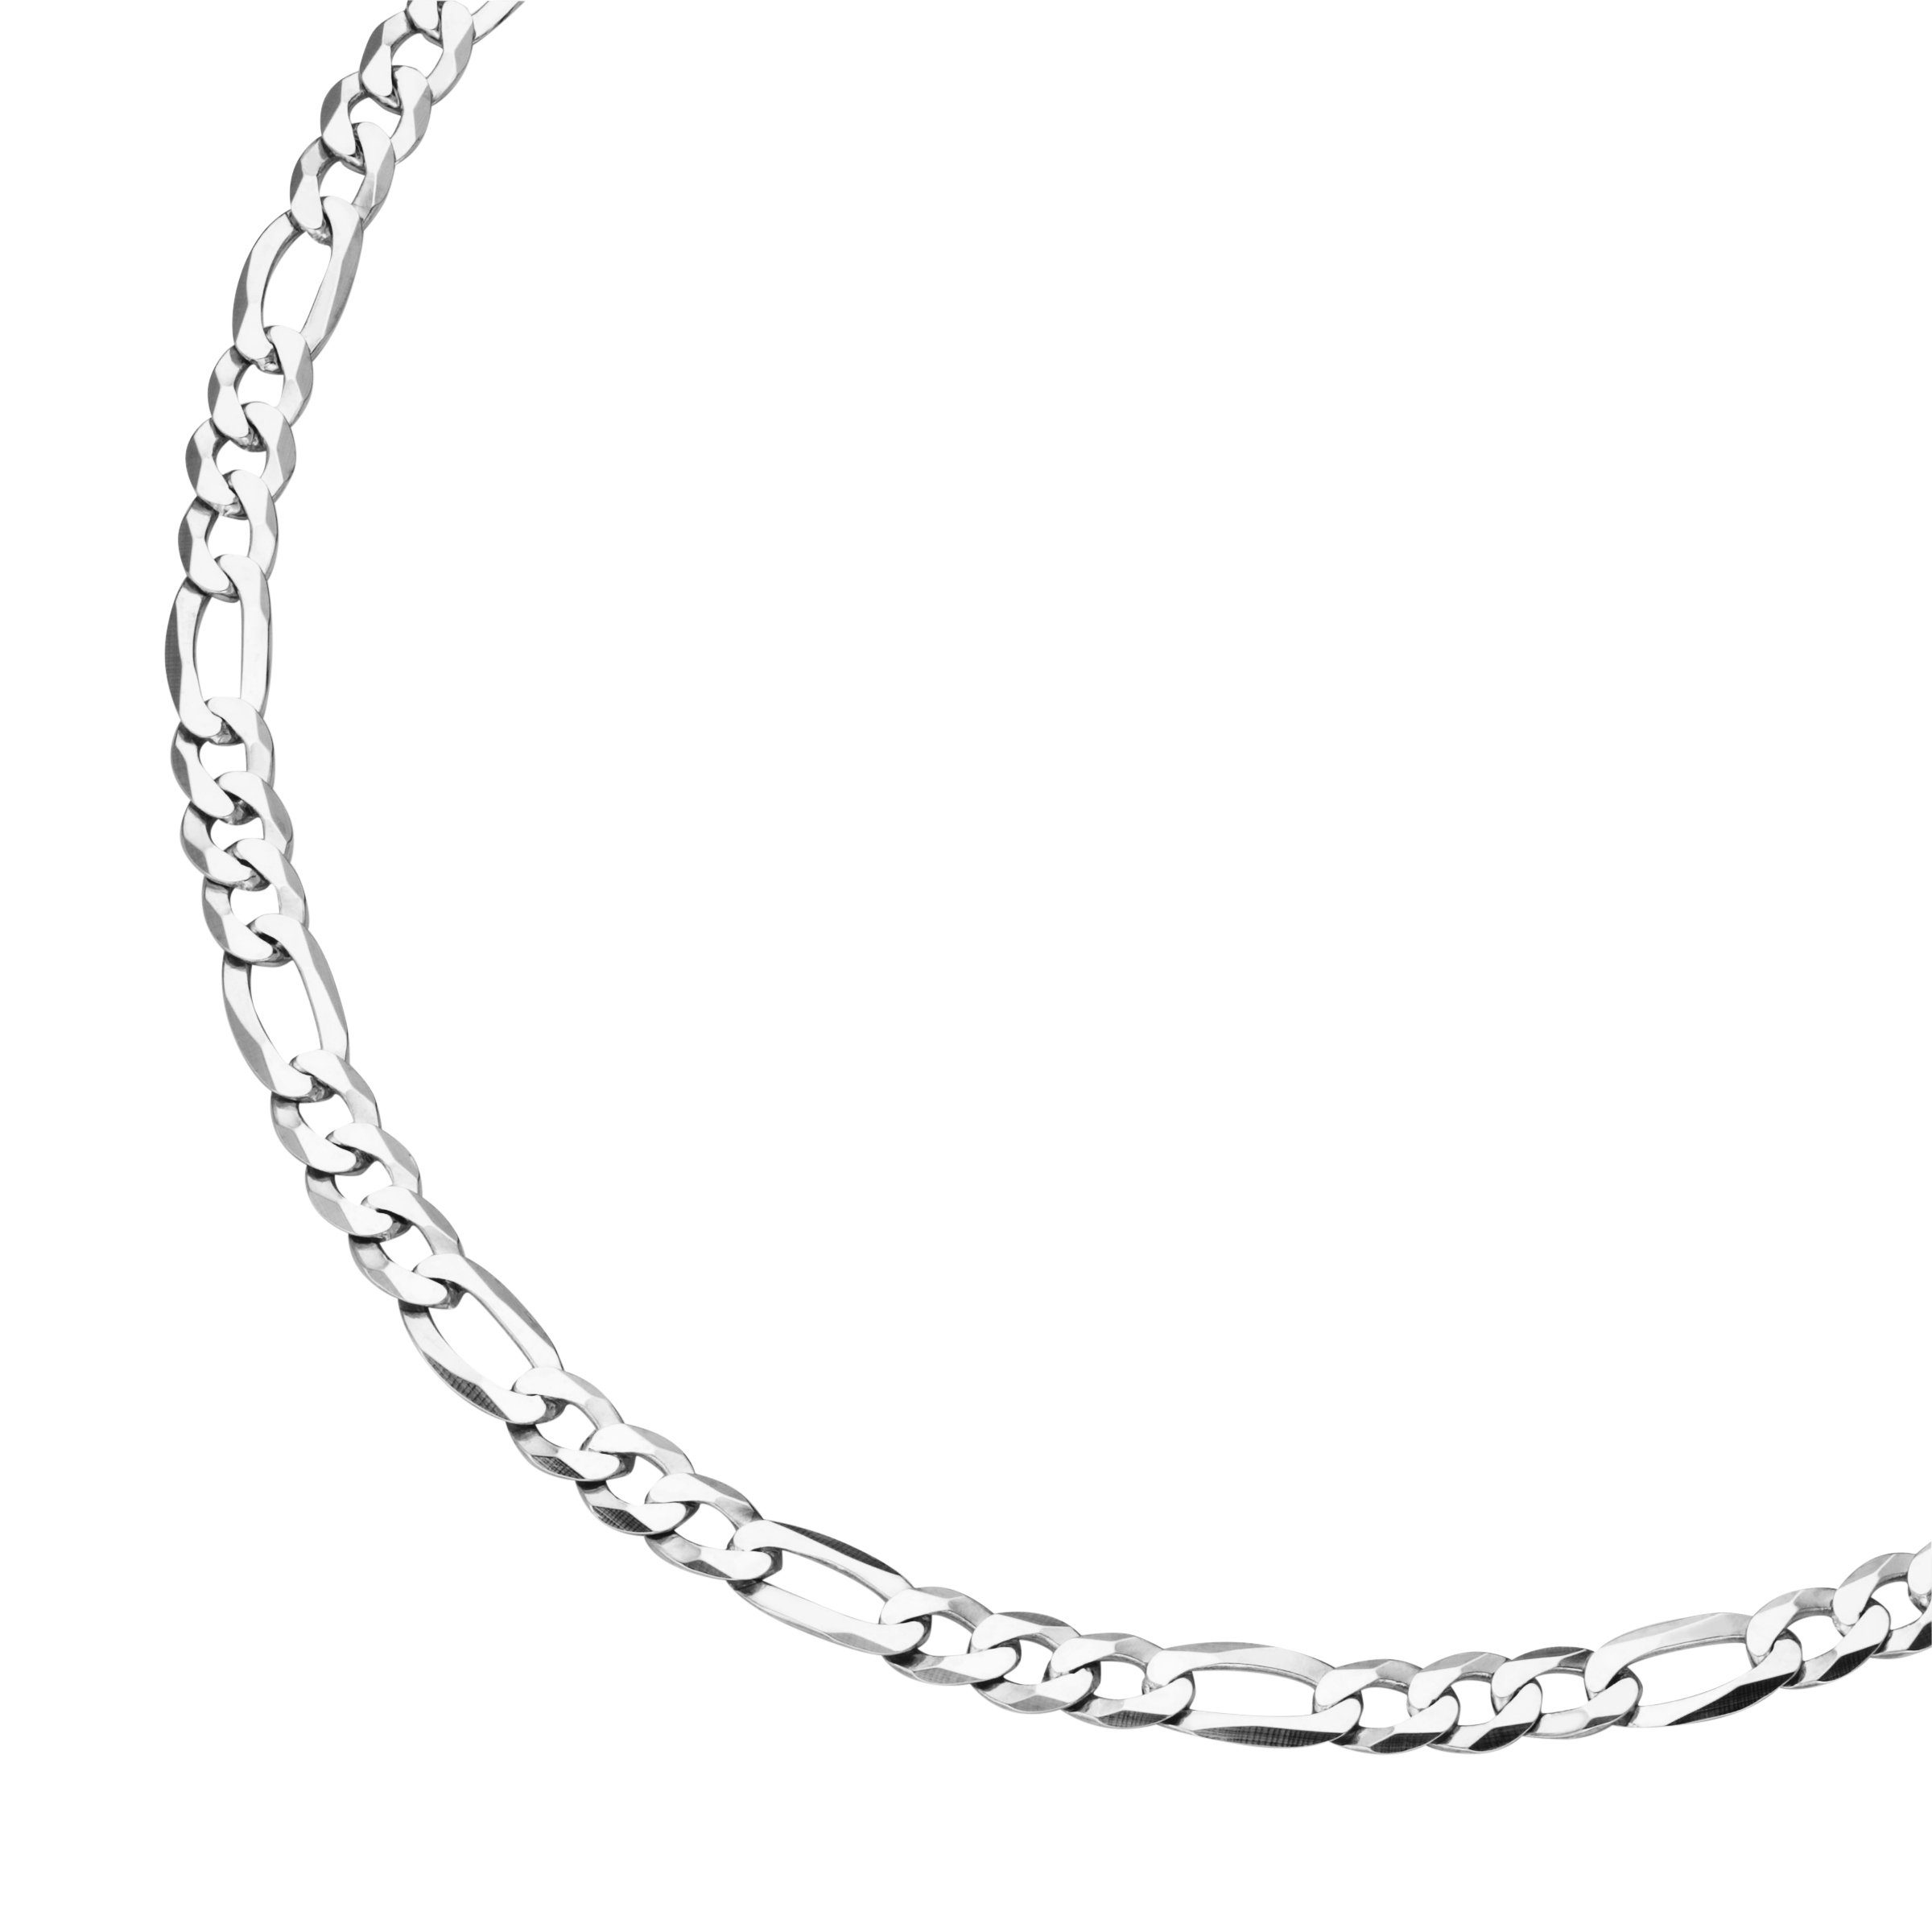 Smart Jewel Silberkette Figarokette 3/1 diamantiert, massiv, Silber 925,  Originalgröße kann von der Abbildung abweichen